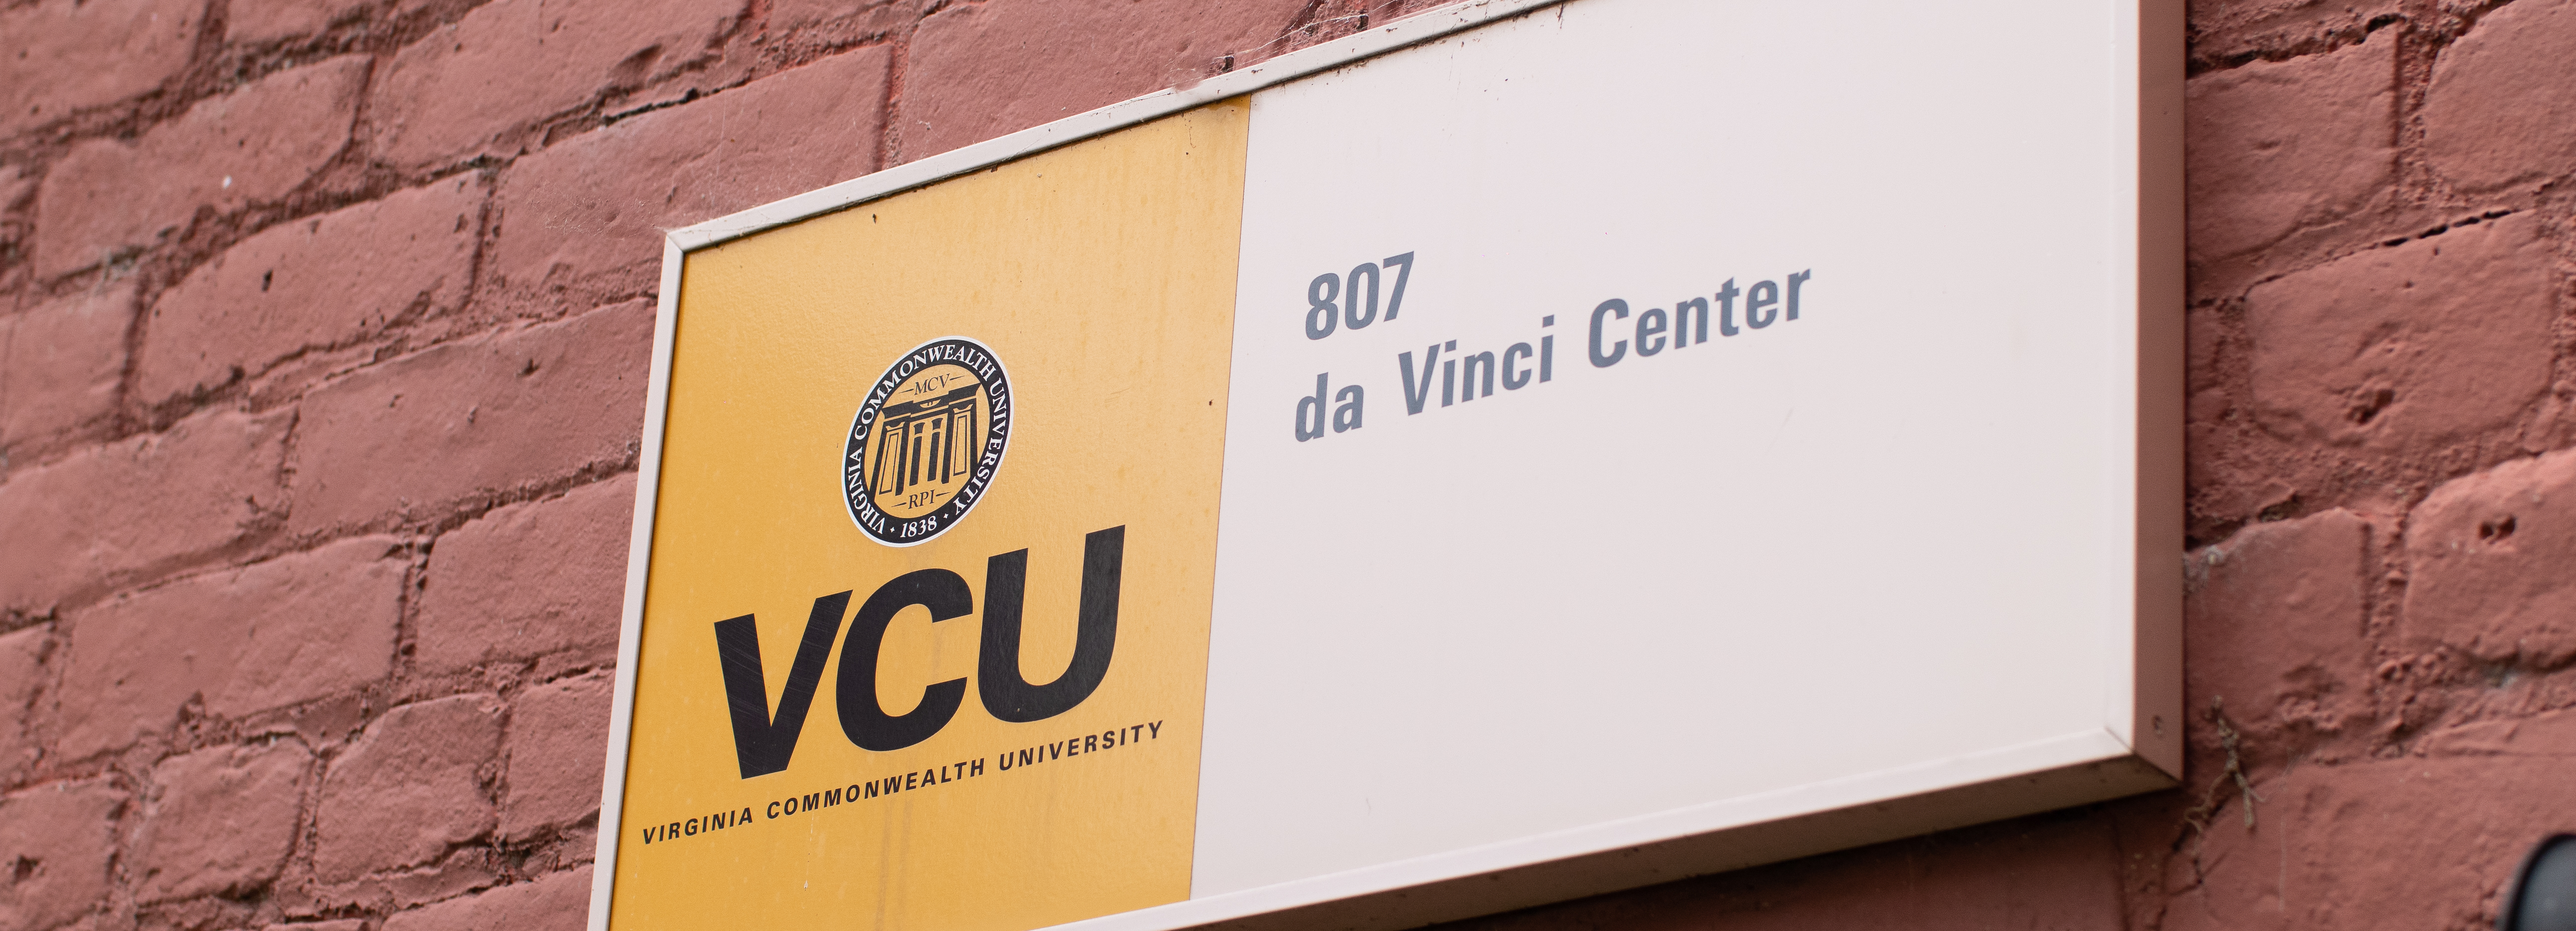 VCU da Vinci Center